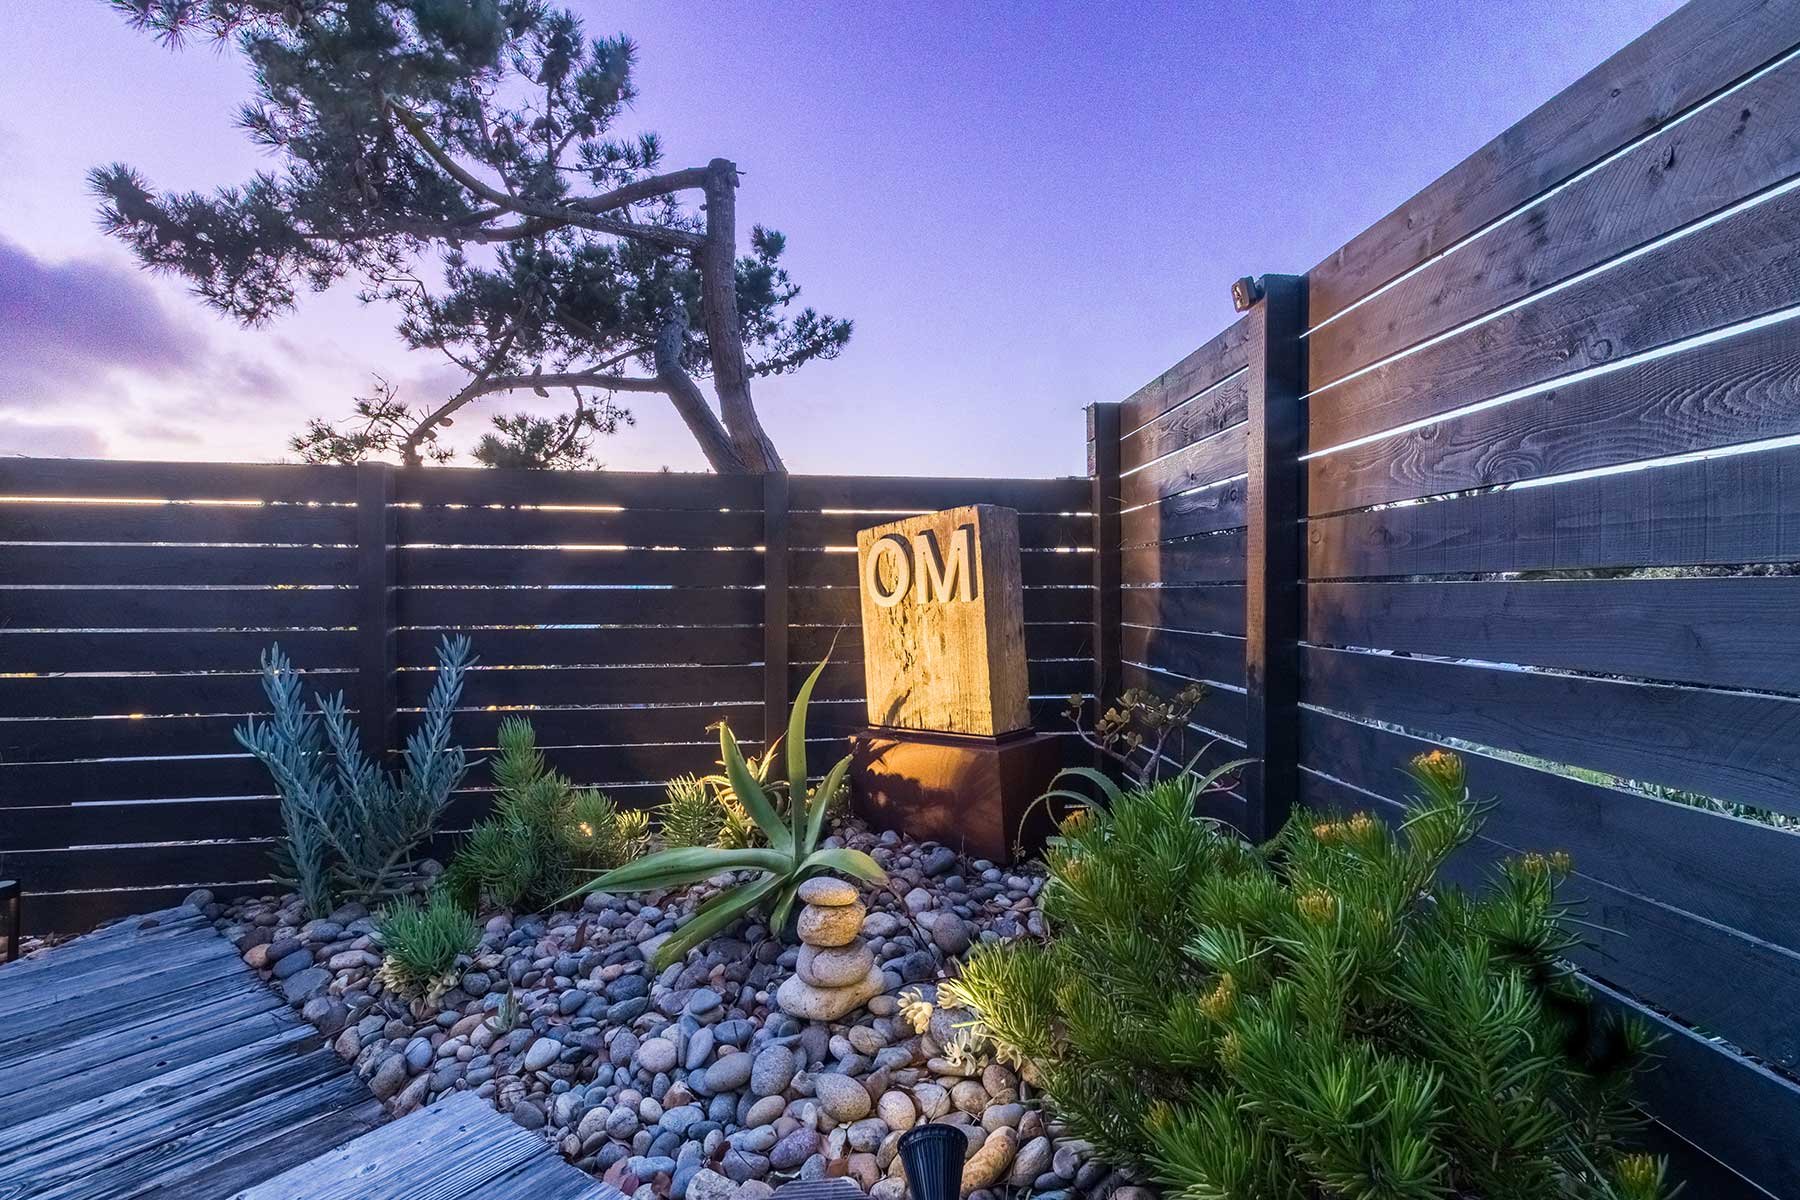 Om-sign-on-front-porch-at-dusk.jpg